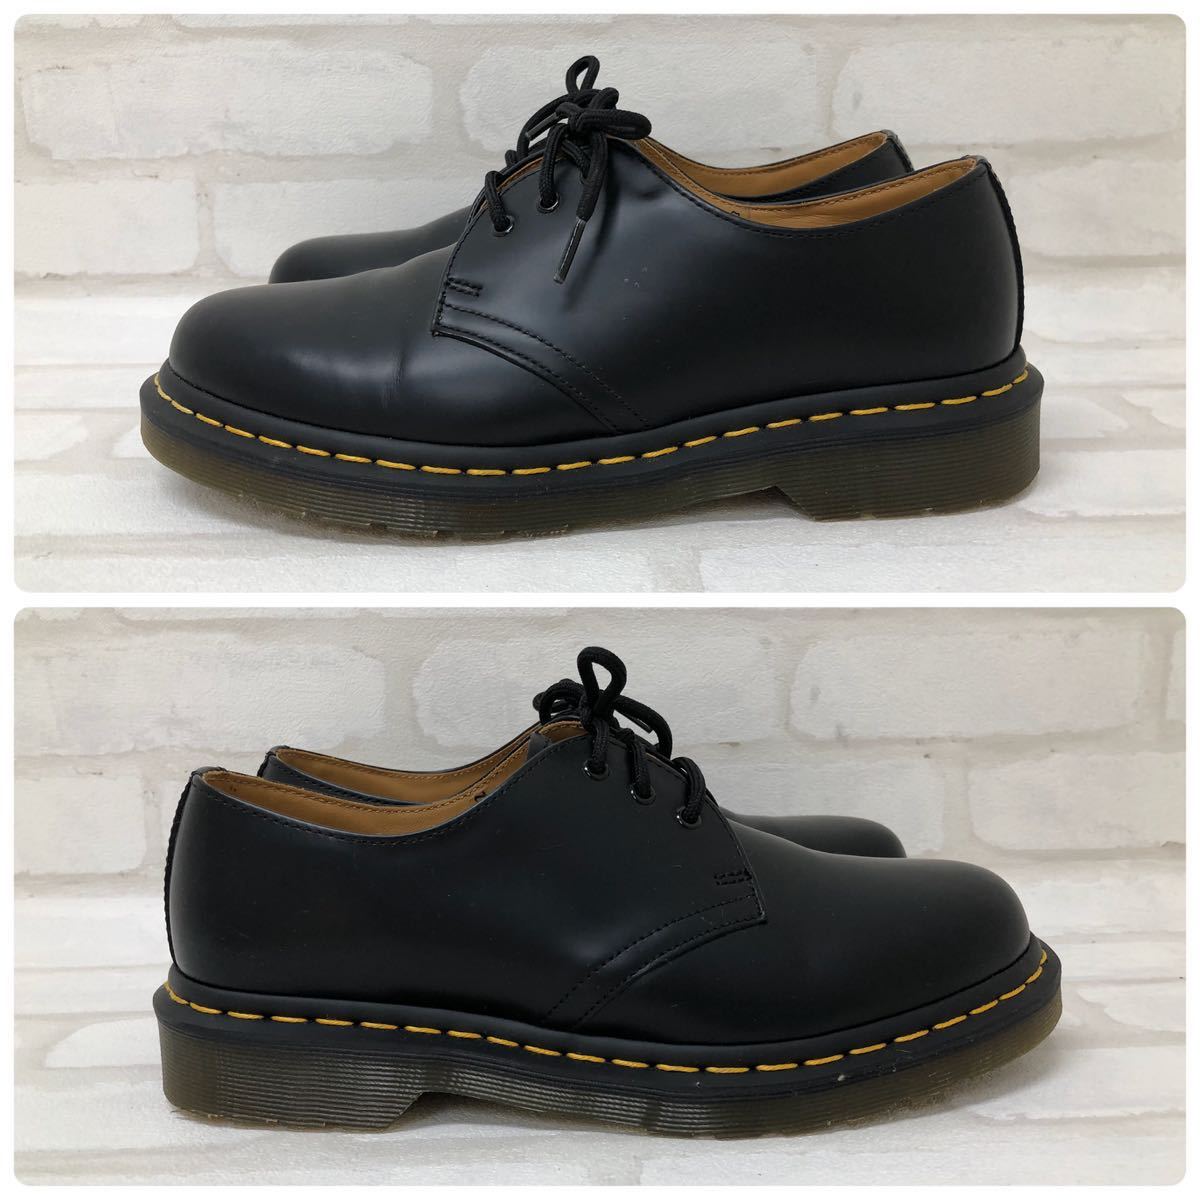 H■ Dr.Martens ドクターマーチン 3ホール UK6 25cm ブラック 黒 革靴 レザーシューズ ビジネスシューズ メンズ レディース ブーツ 靴_画像4